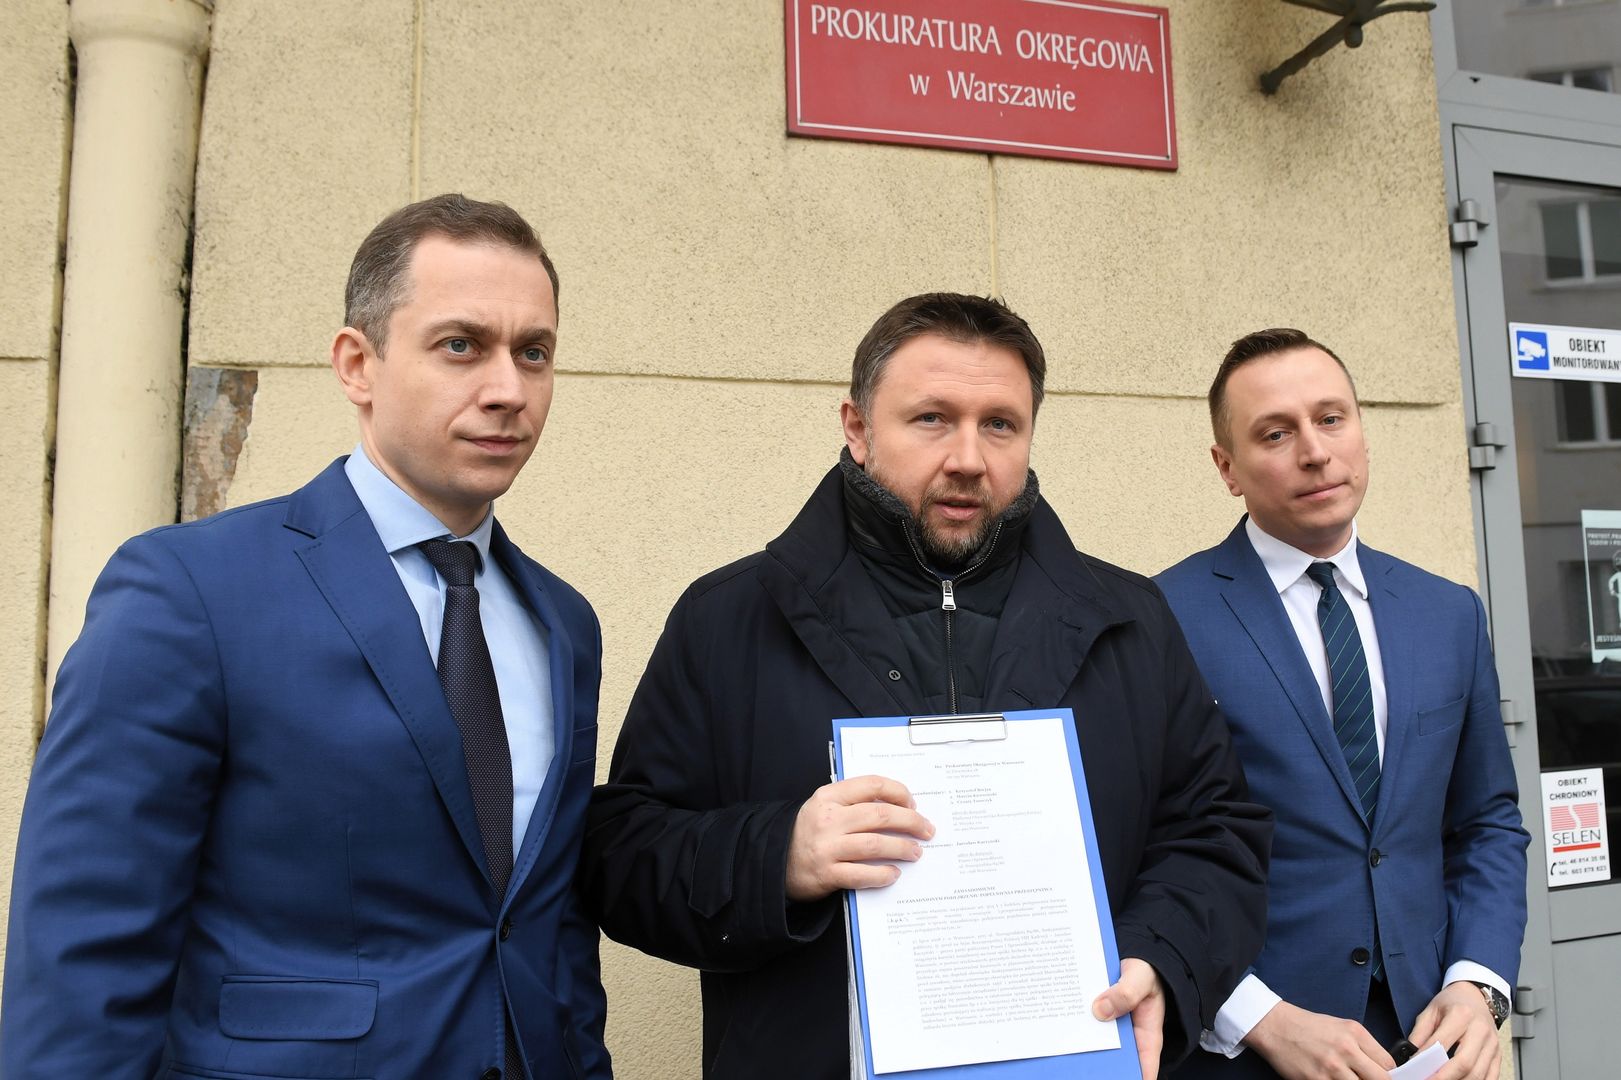 Posłowie PO zawiadomili prokuraturę ws. dwóch możliwych przestępstw Jarosława Kaczyńskiego